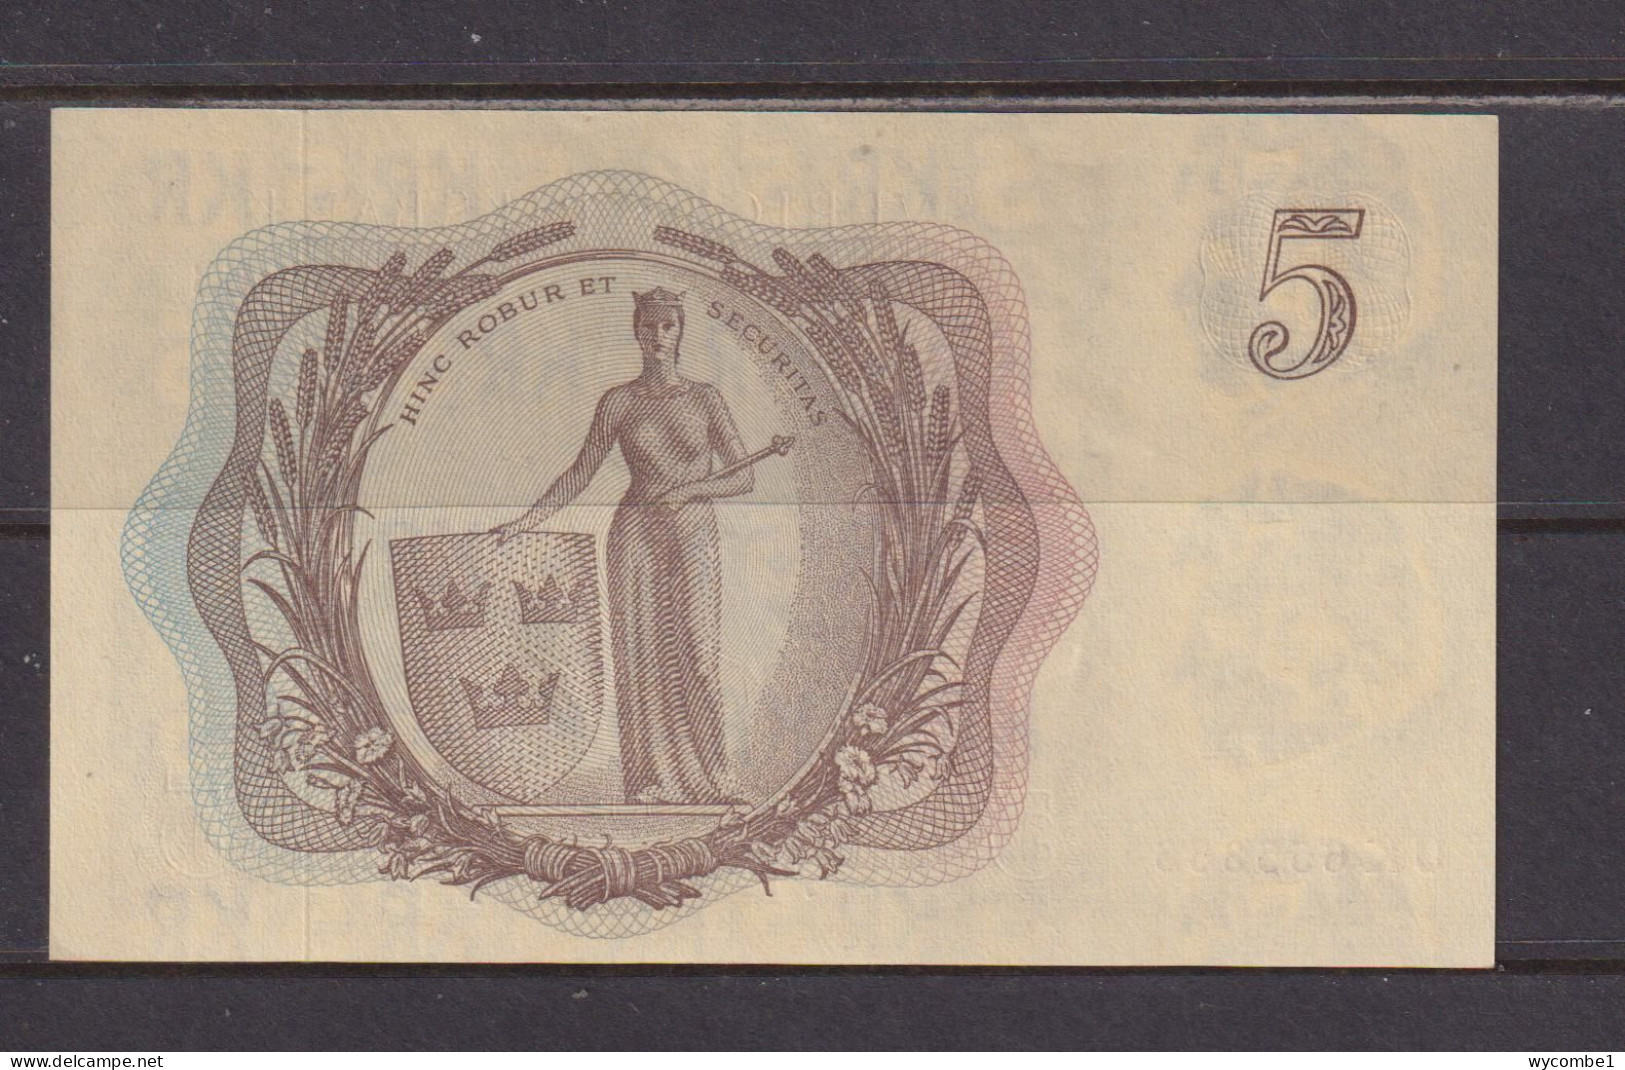 SWEDEN - 1963 5 Kronor AUNC/UNC Banknote As Scans - Sweden